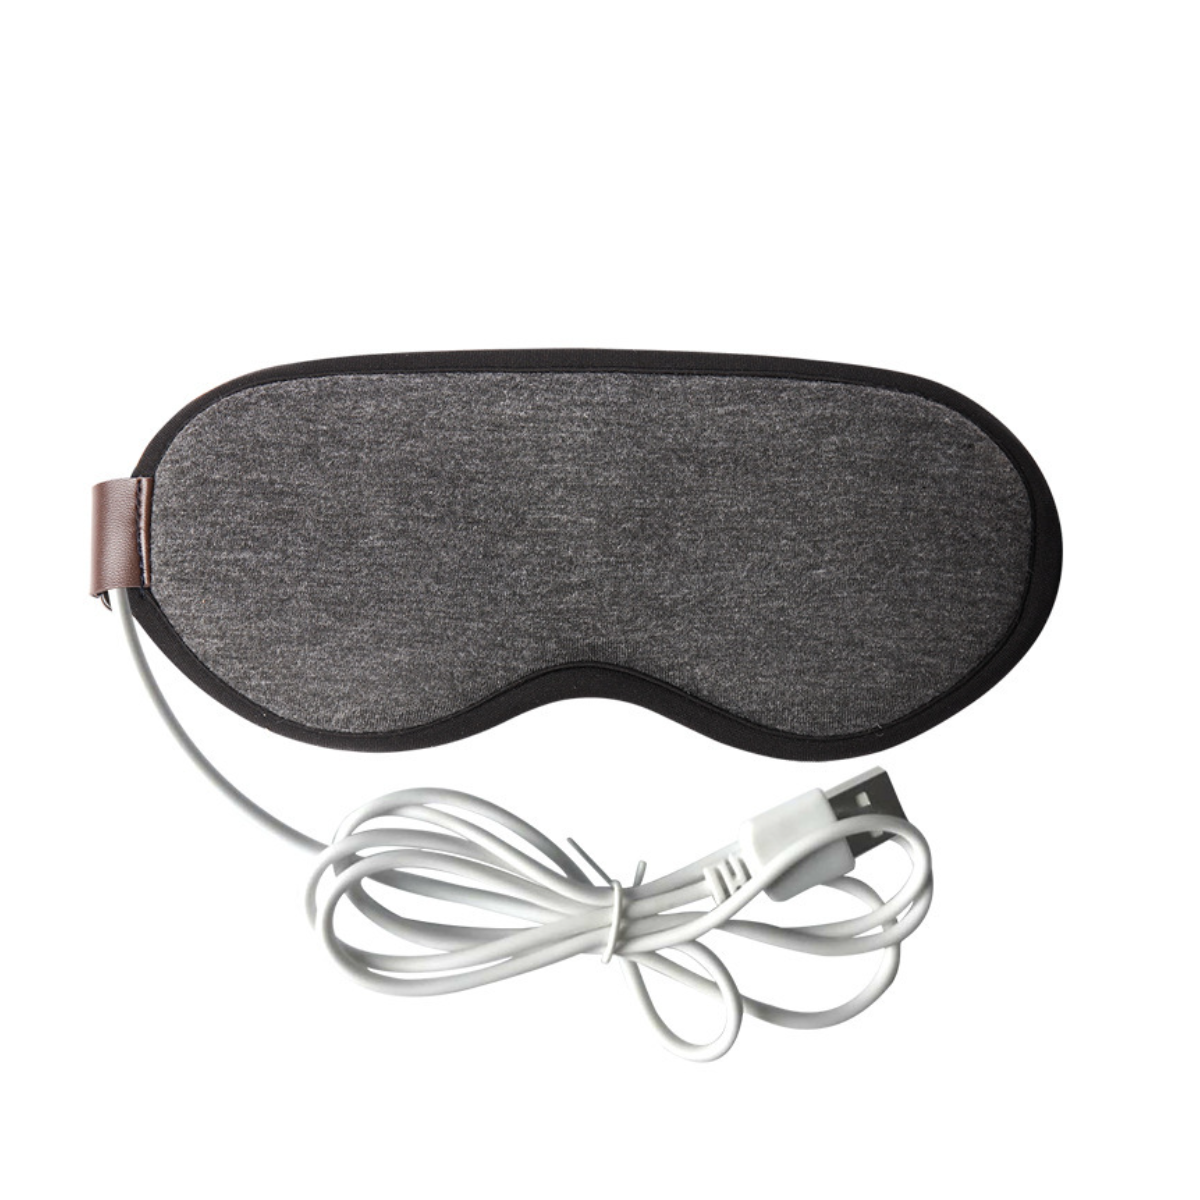 Heizung Dampf-Augenmaske4.5W: Einfaches Design, Funktion-Grau usb praktische Dampf-Augenmaske wiederaufladbare UWOT